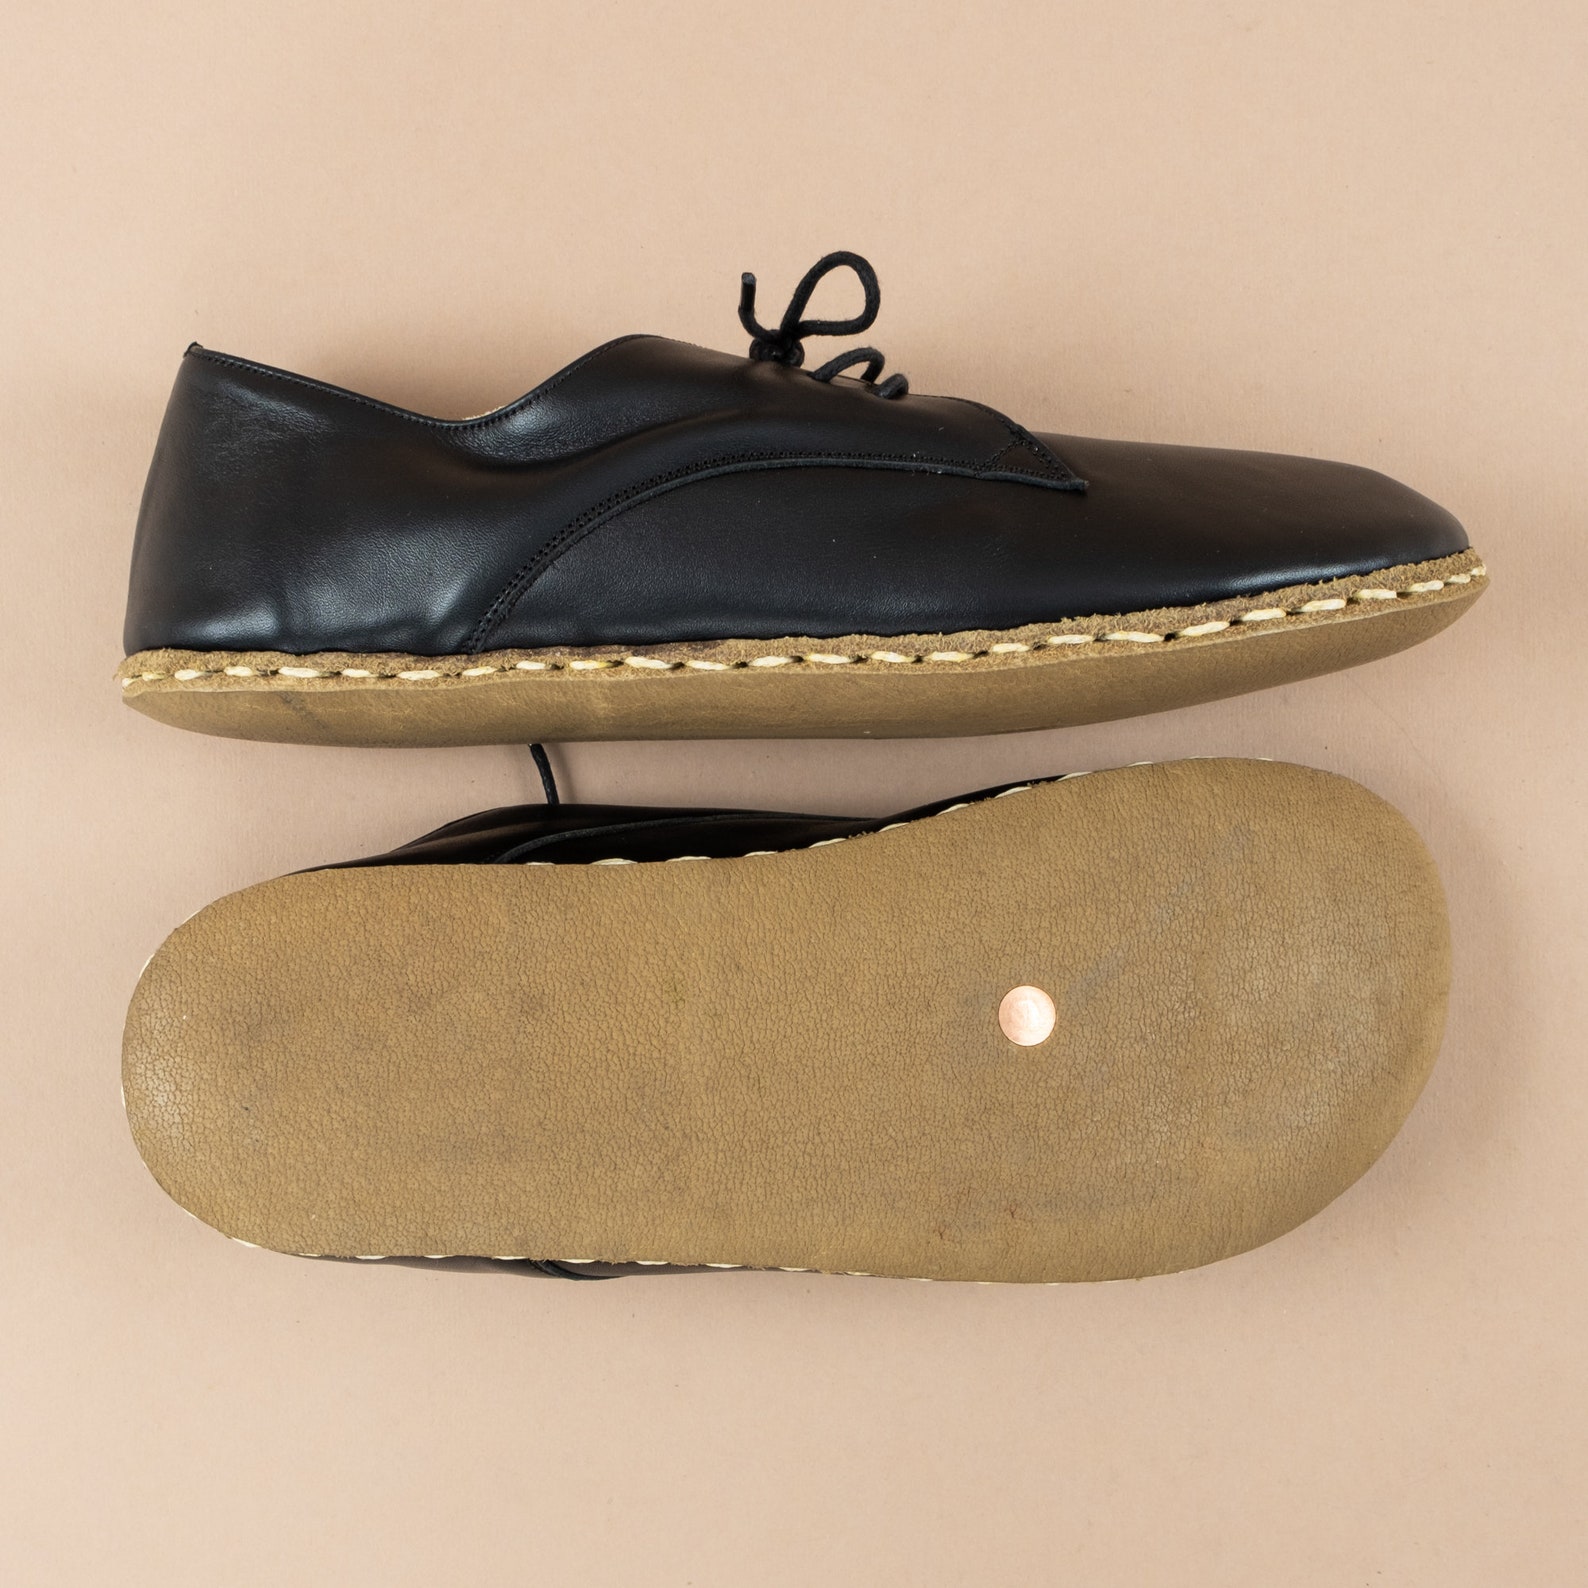 Oxford Barefoot Women Classic Yemeni Shoes Black Leather - Etsy